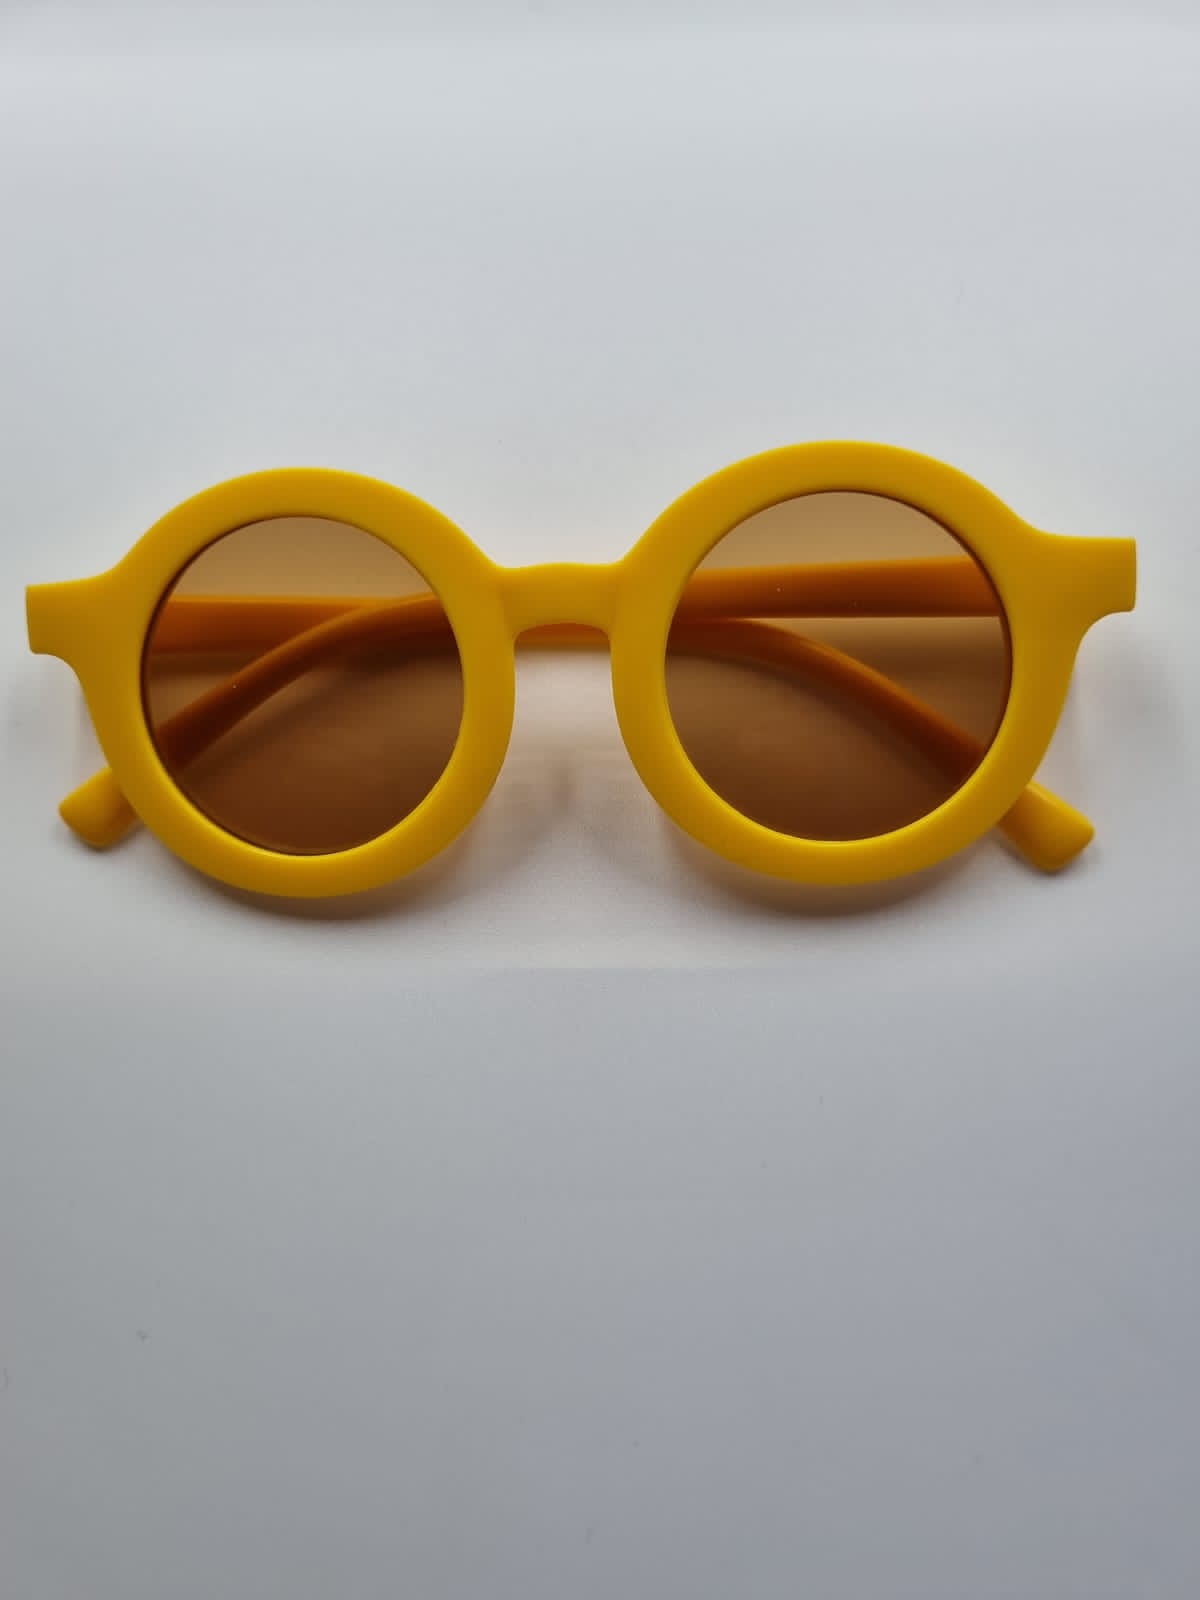 KIDS Personalised Sunglasses